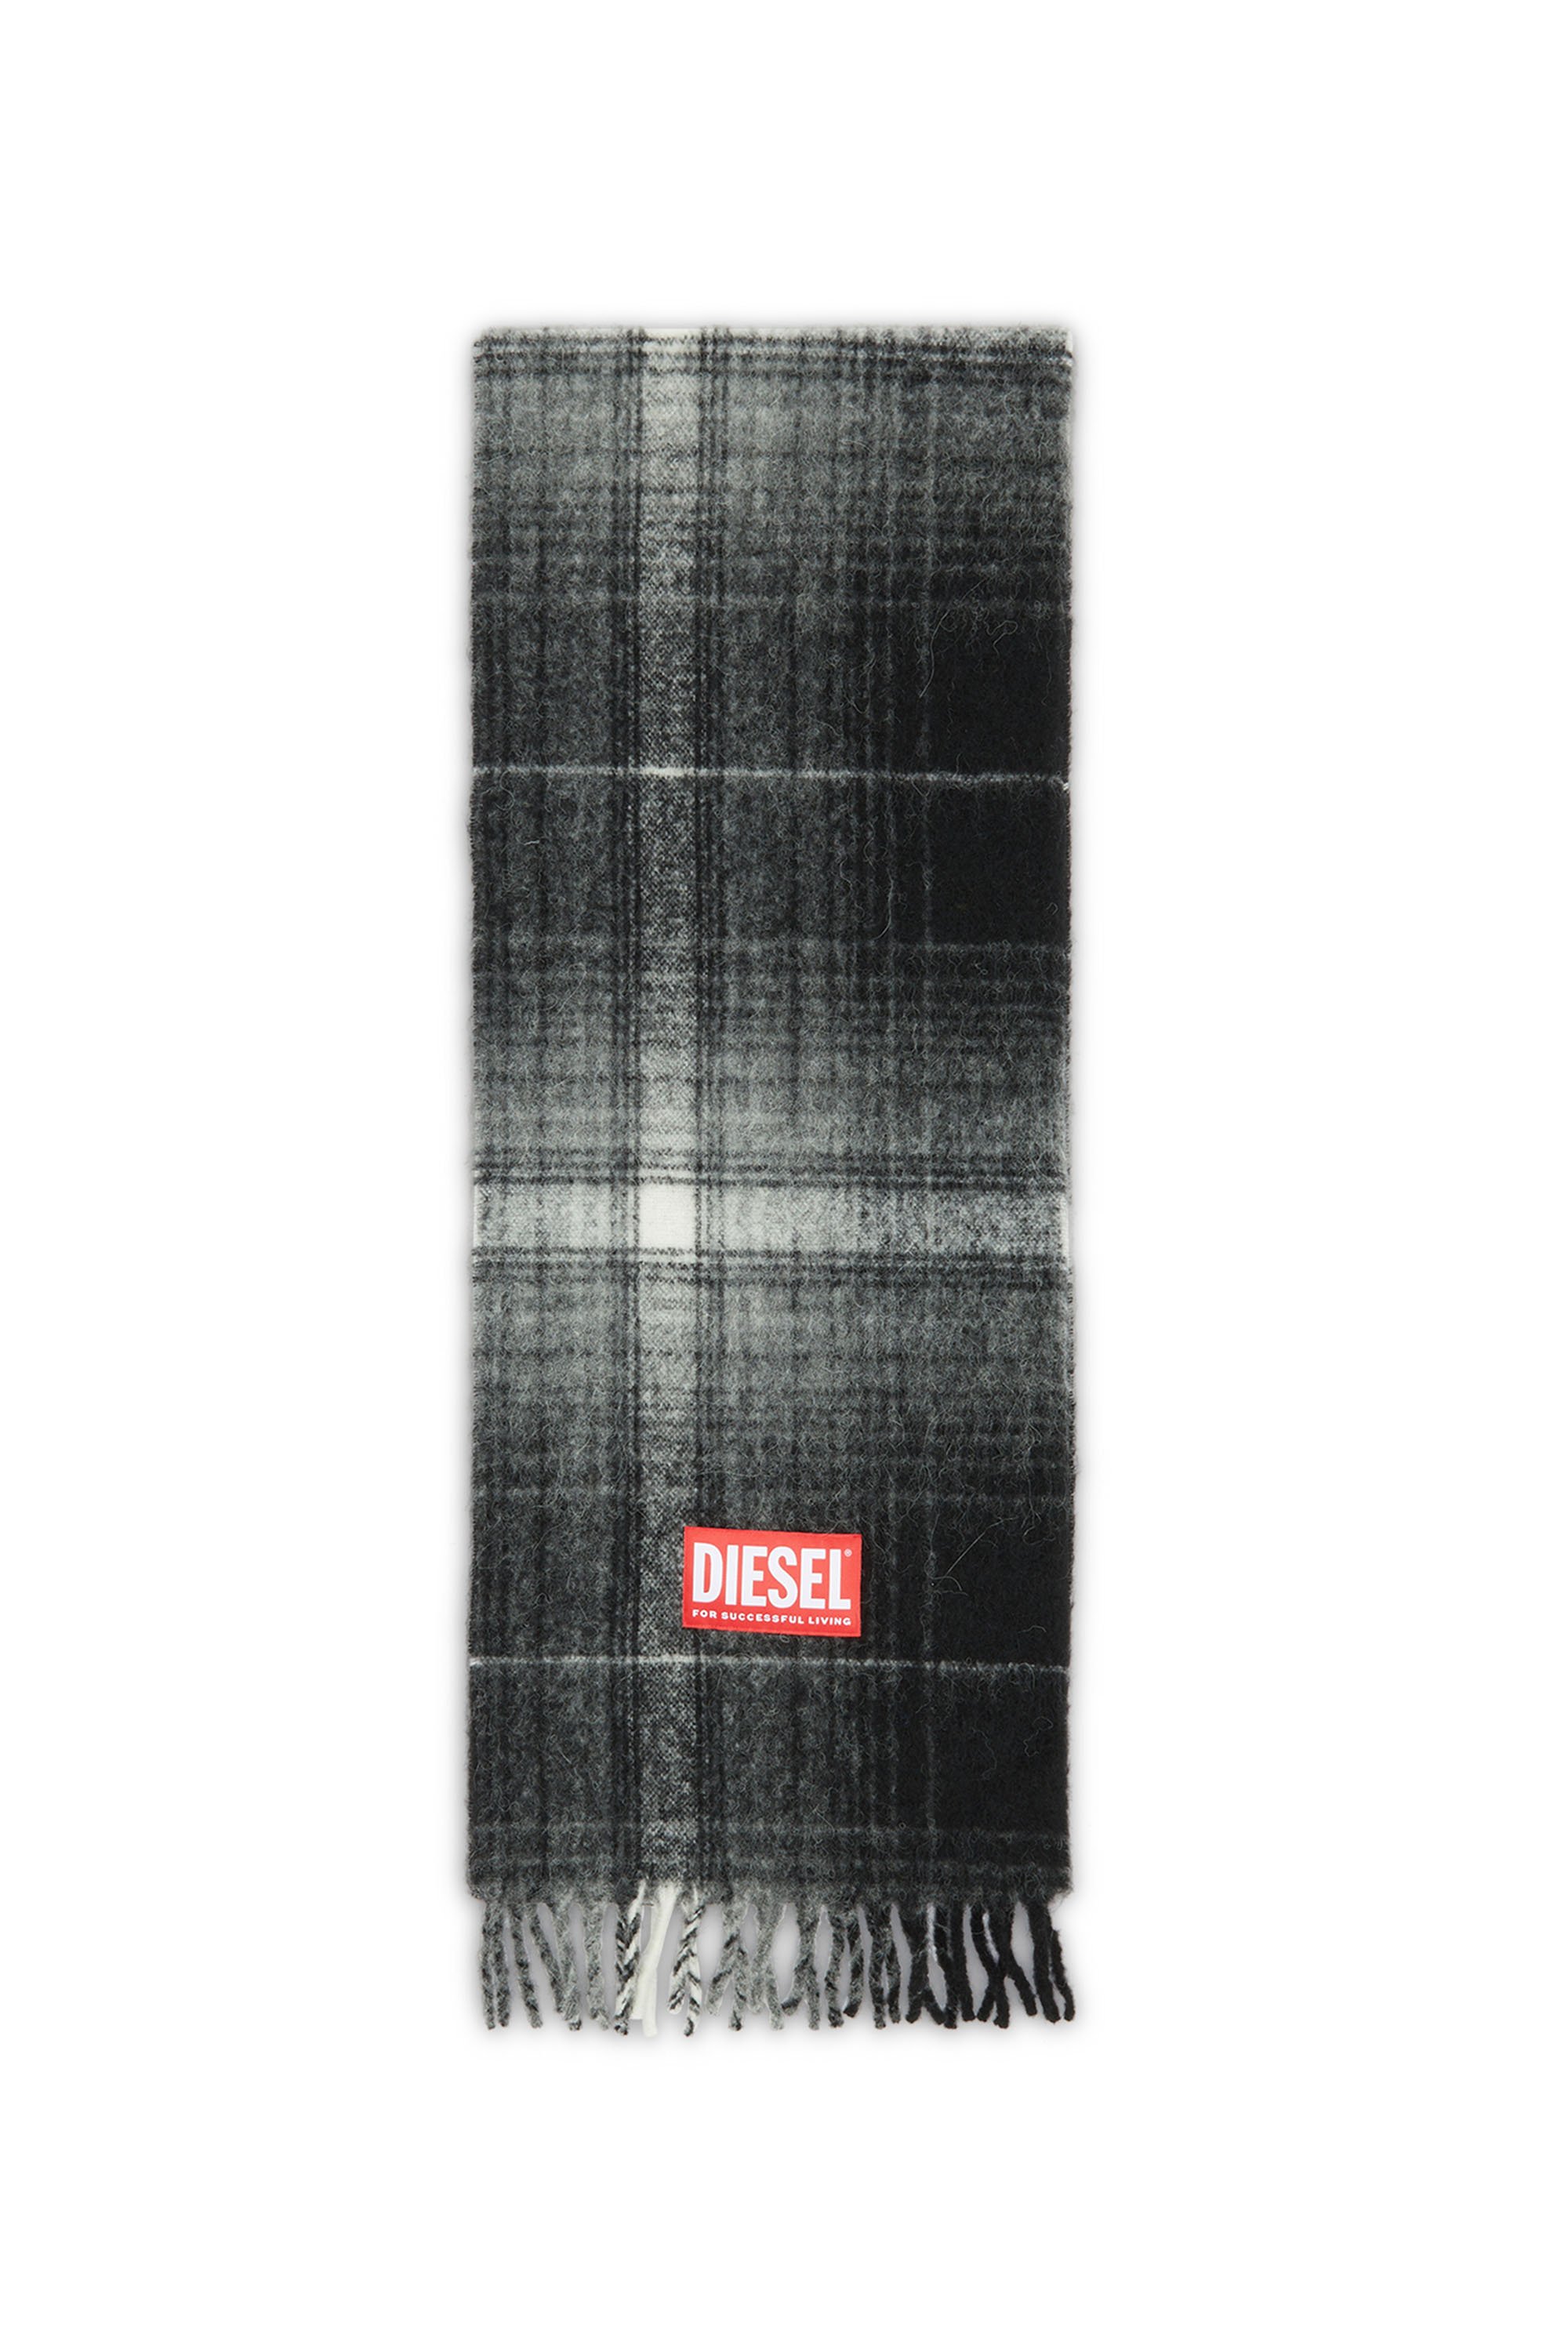 Diesel - S-BESTRO, Man Checked scarf in wool and alpaca in Black - Image 1